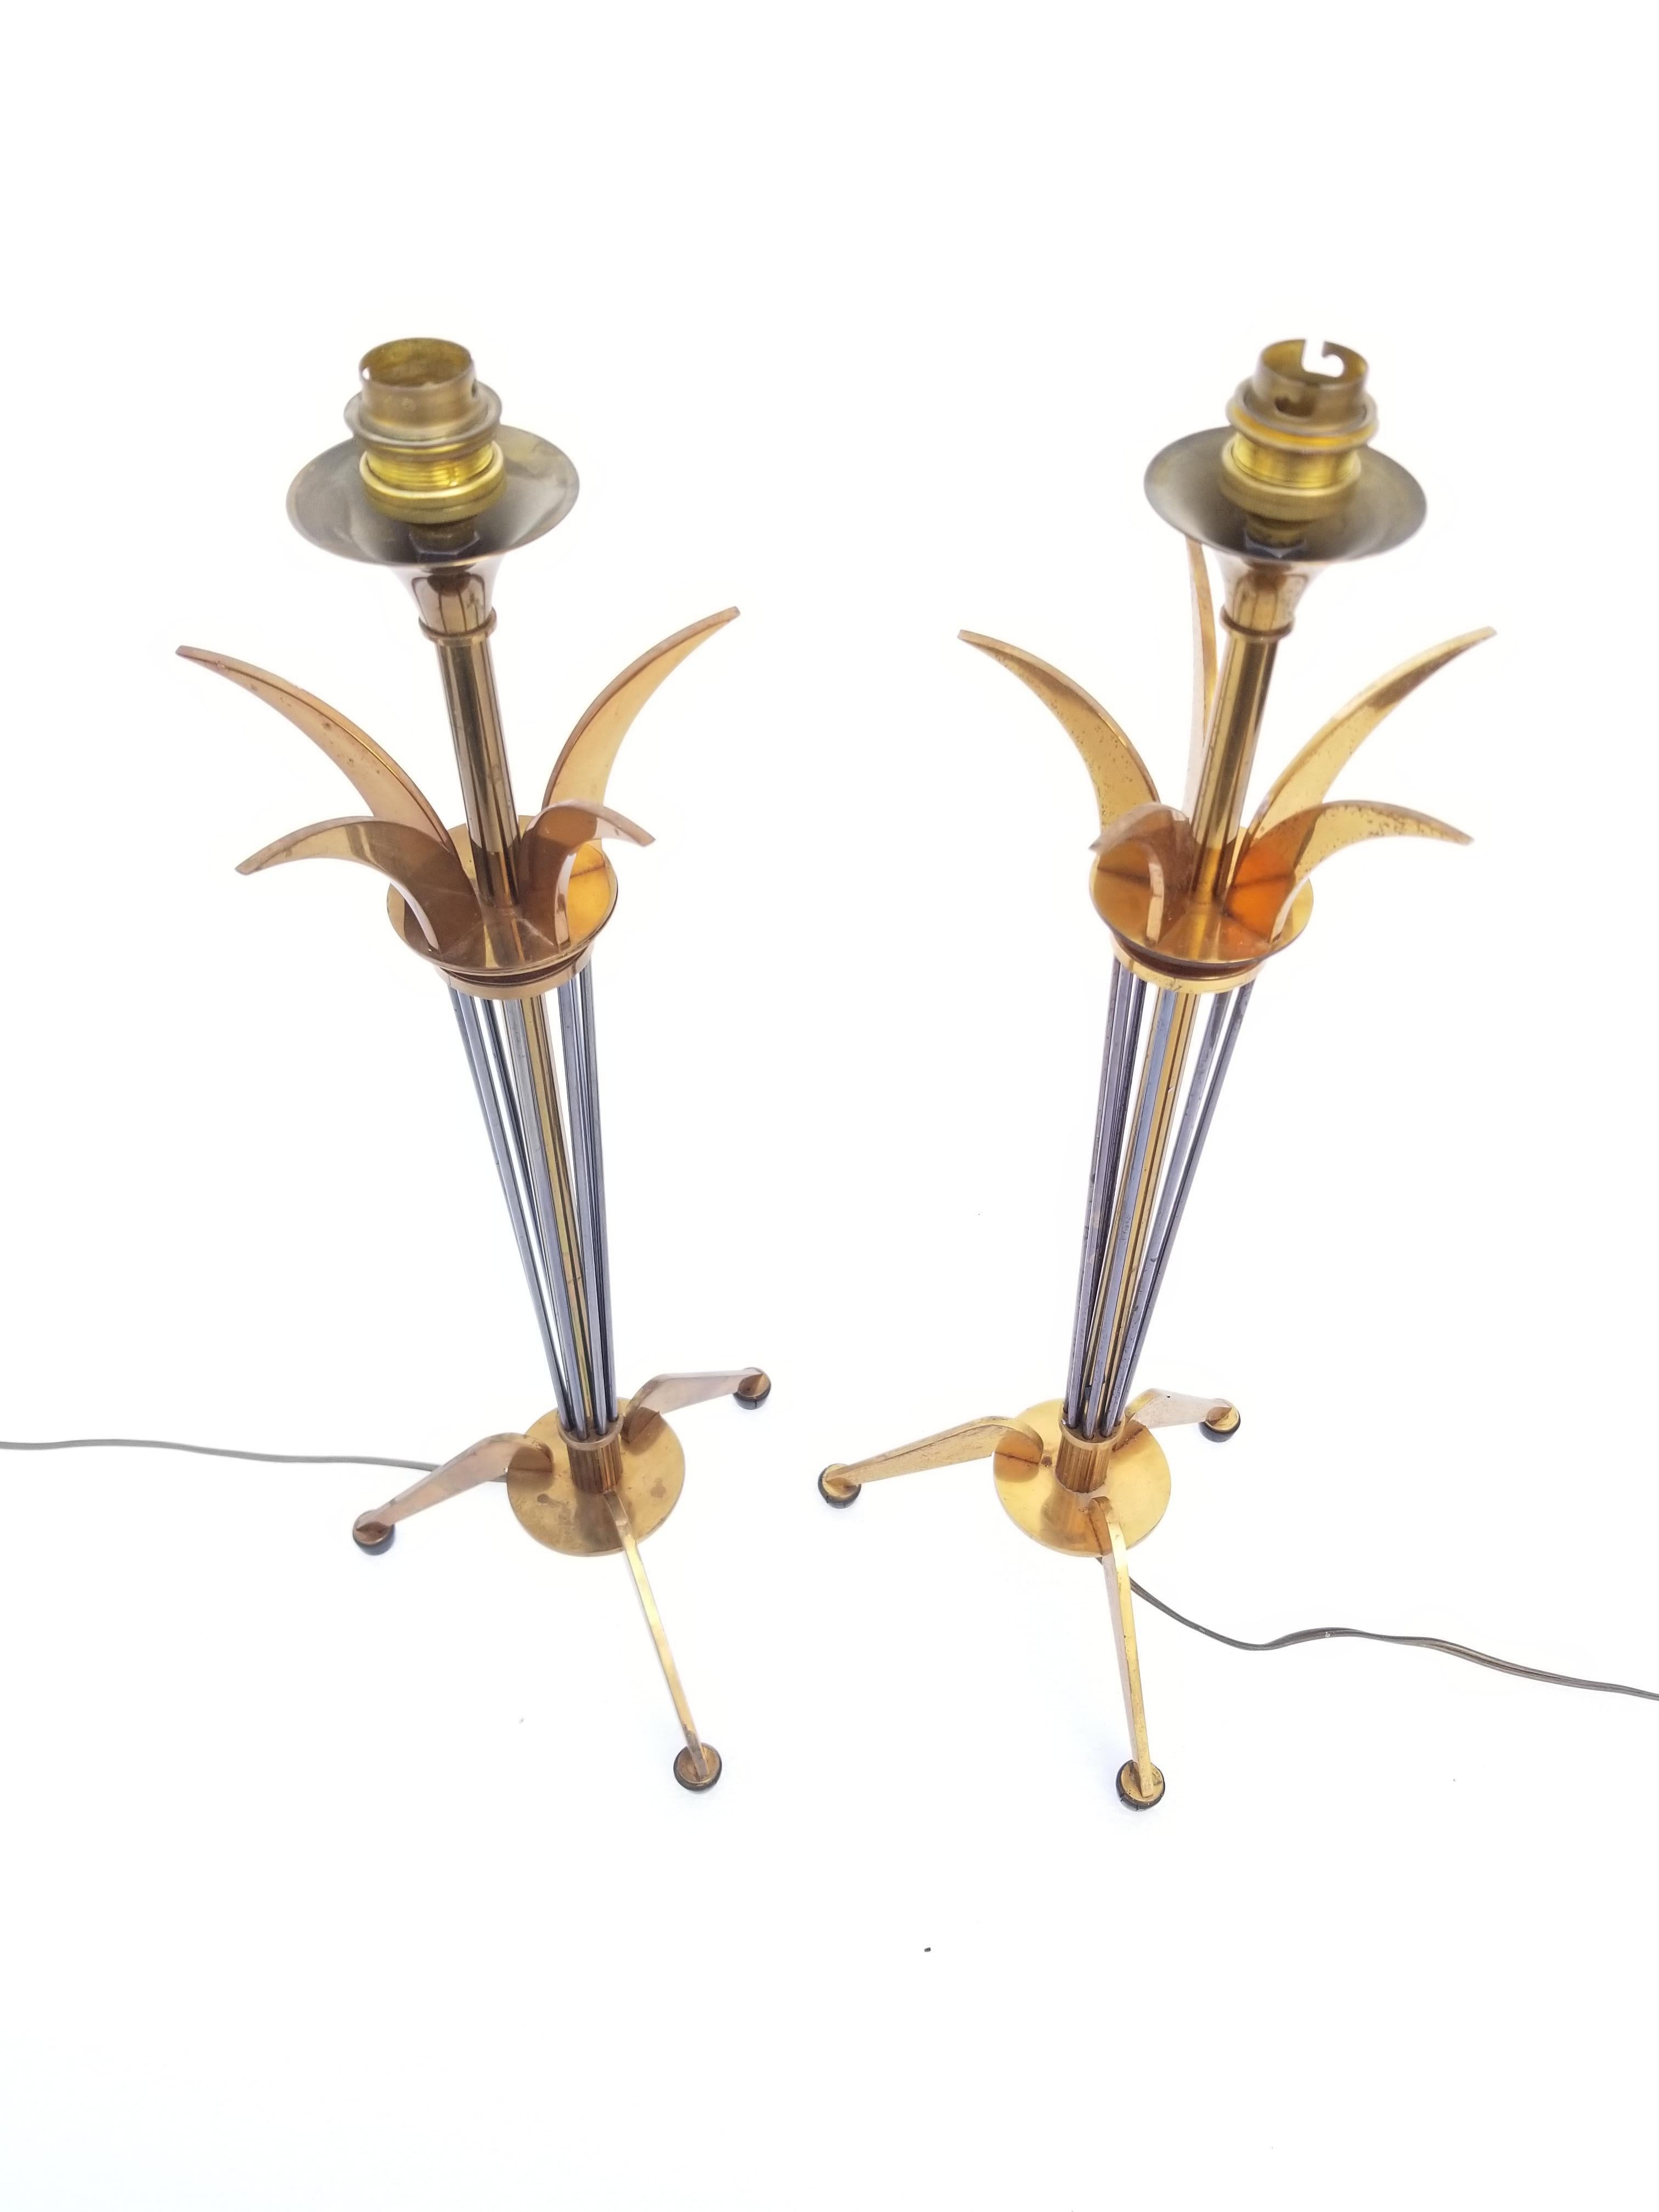 Paar Maison Lunel Tischlampen
2 patiniertes Messing, doriertes Messing und Rotguss
1 Glühbirne, max. 75 Watt.